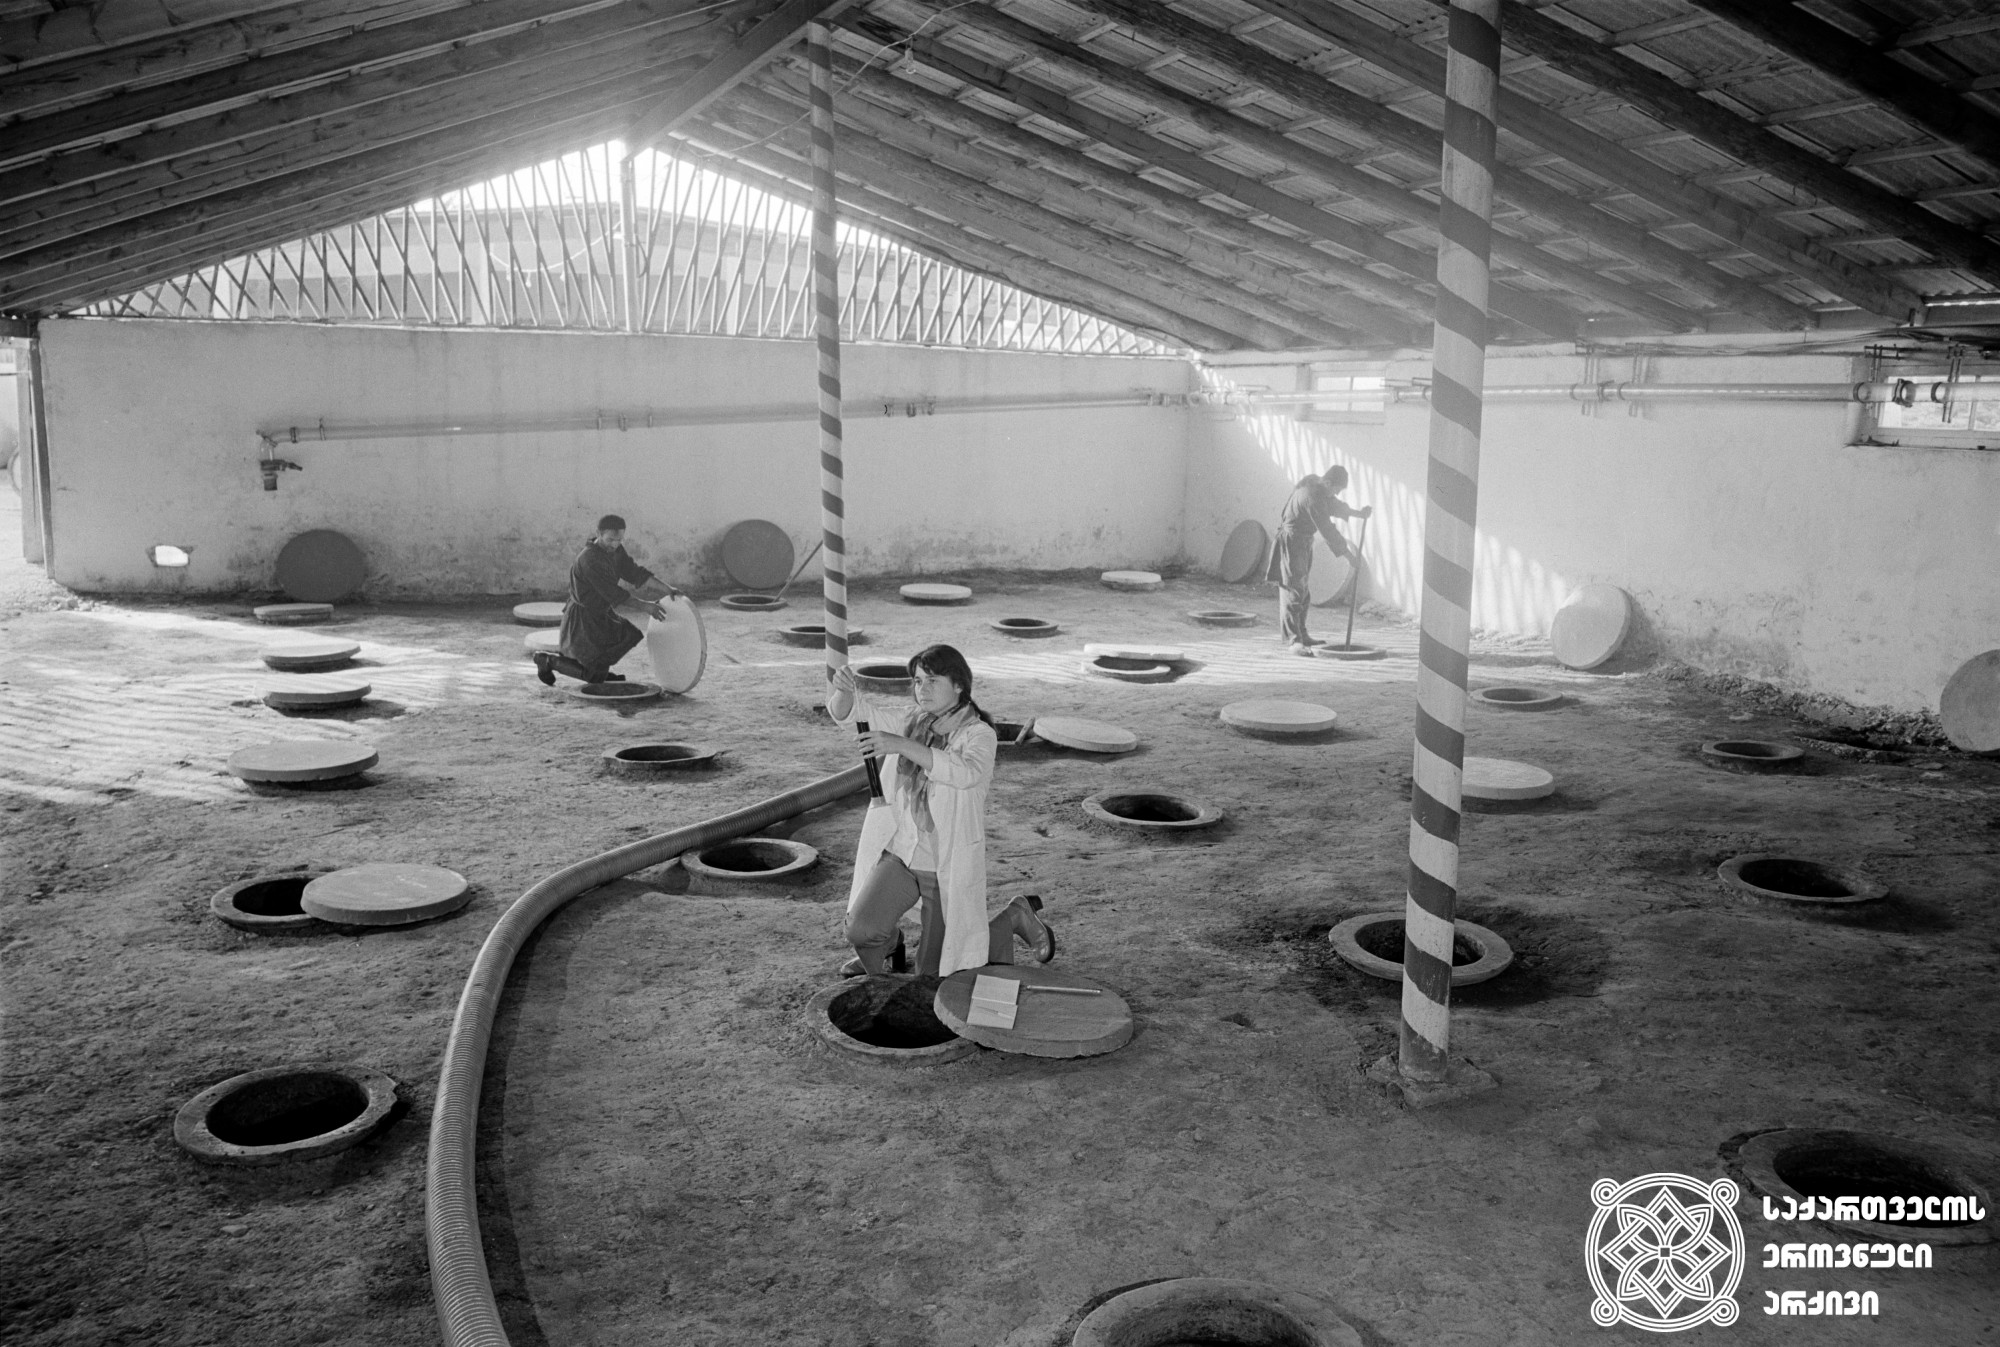 ღვინის ქარხანა<br> 
ფოტო: ვ. სოკოლოვი<br> 
სოფელი ნაფარეული, 1975 წელი <br> 
Wine factory<br>
Photo by V. Sokolov
Village Naphareuli, 1975 <br>